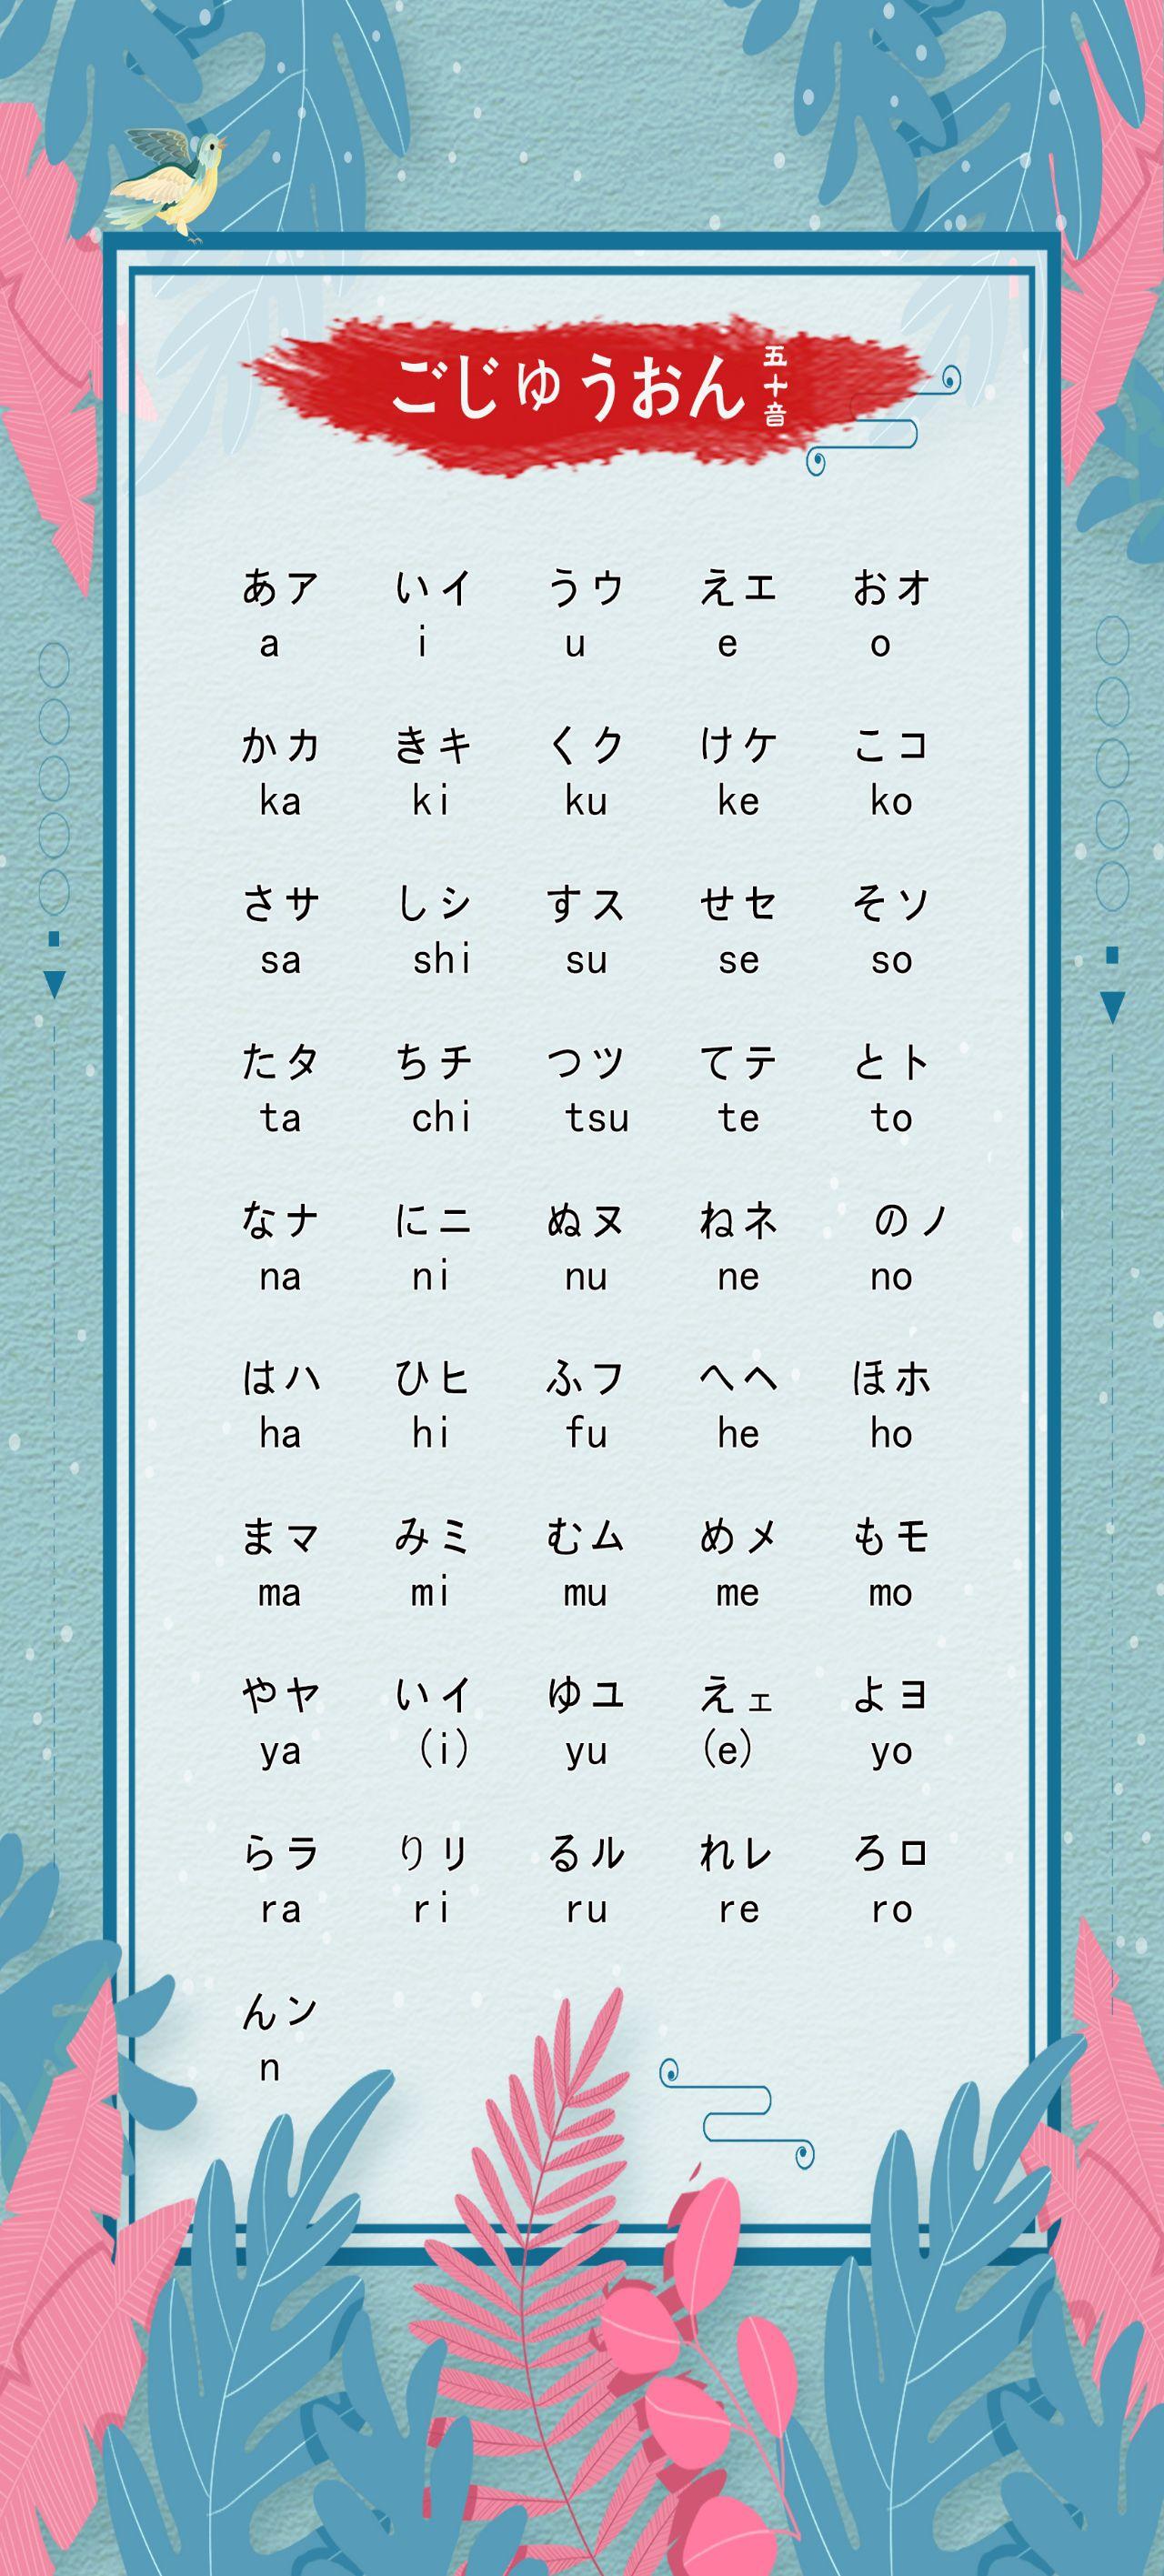 有没有日语五十音图好看的壁纸呢? 